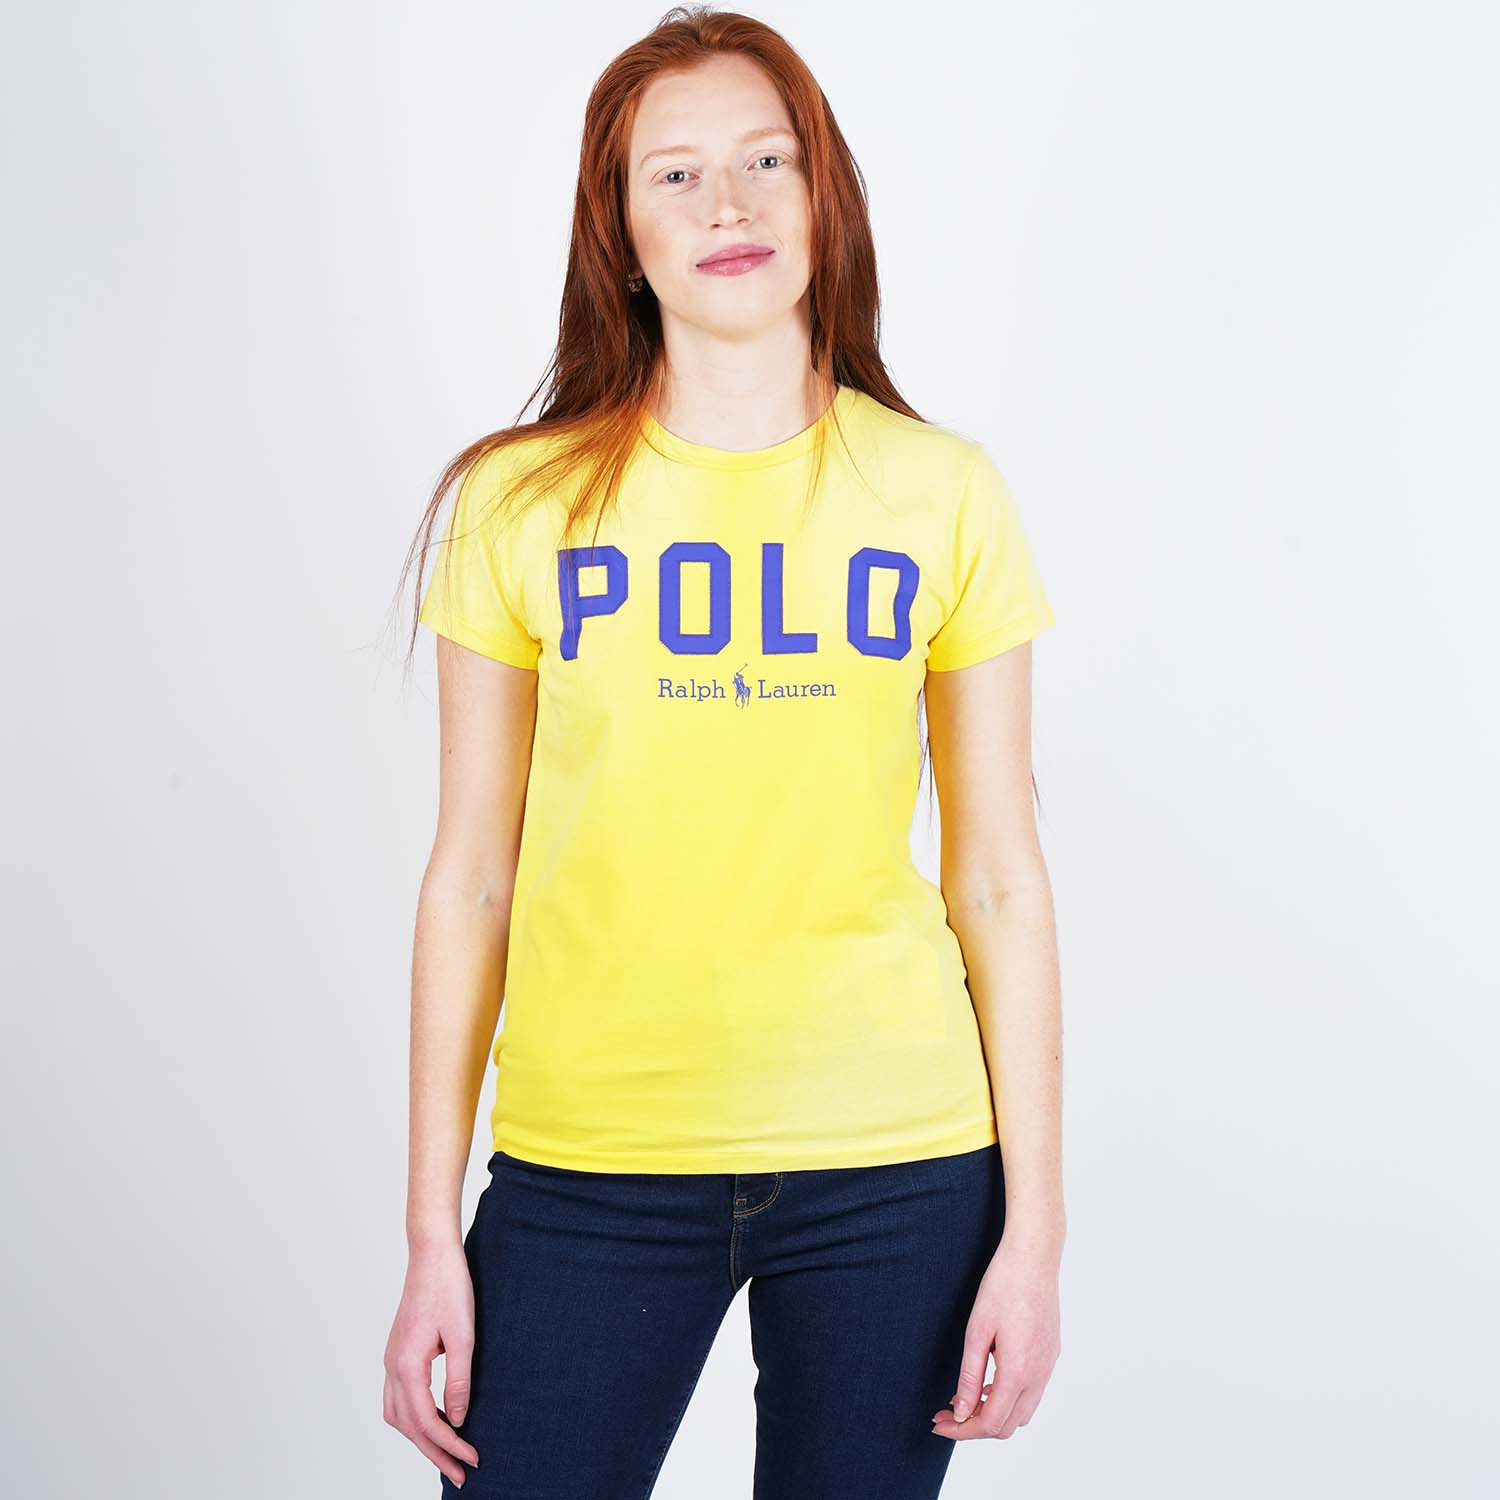 Polo Ralph Lauren Women's T-Shirt (9000050506_44940)